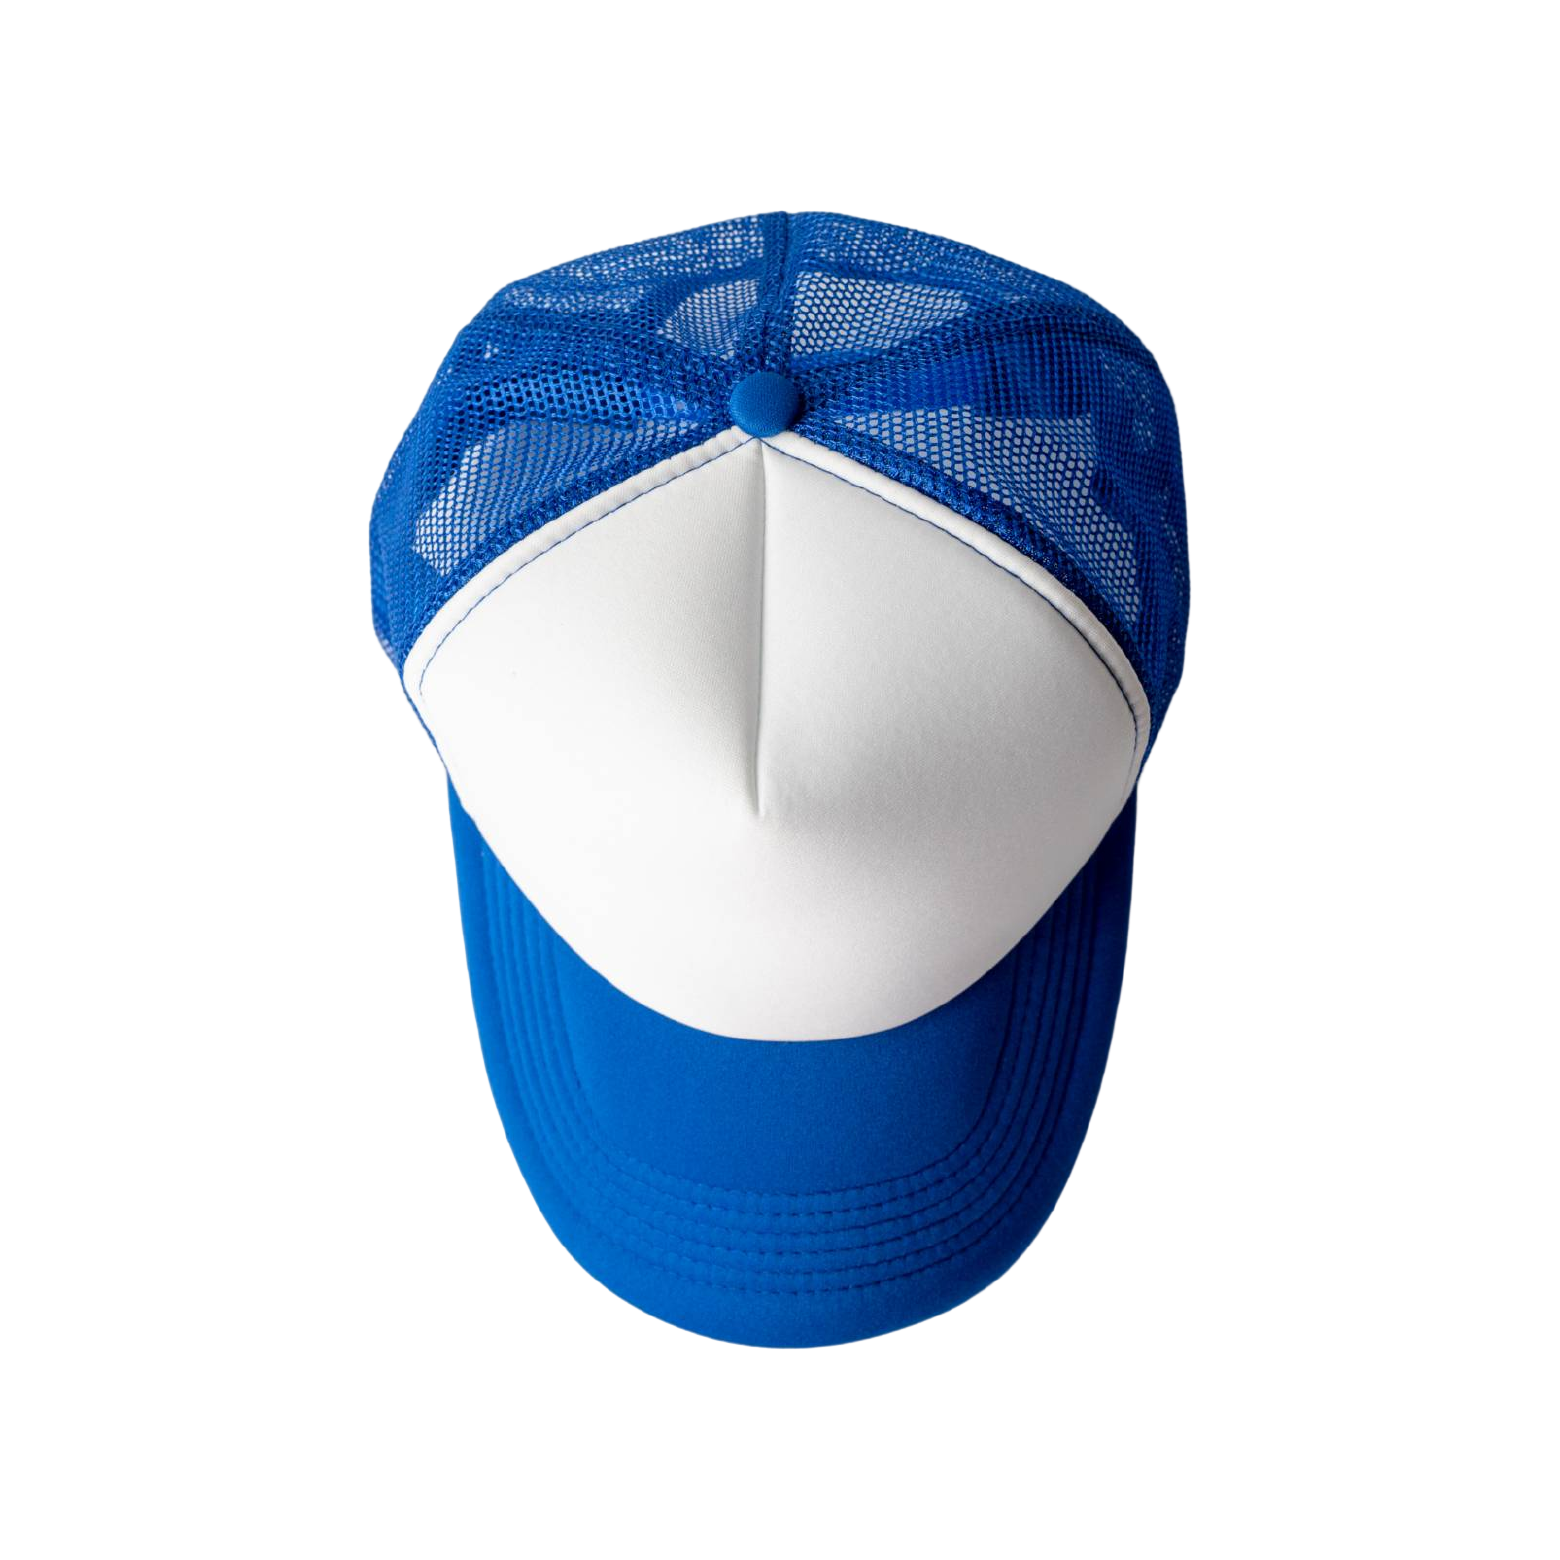 熱昇華空白網帽-藍色